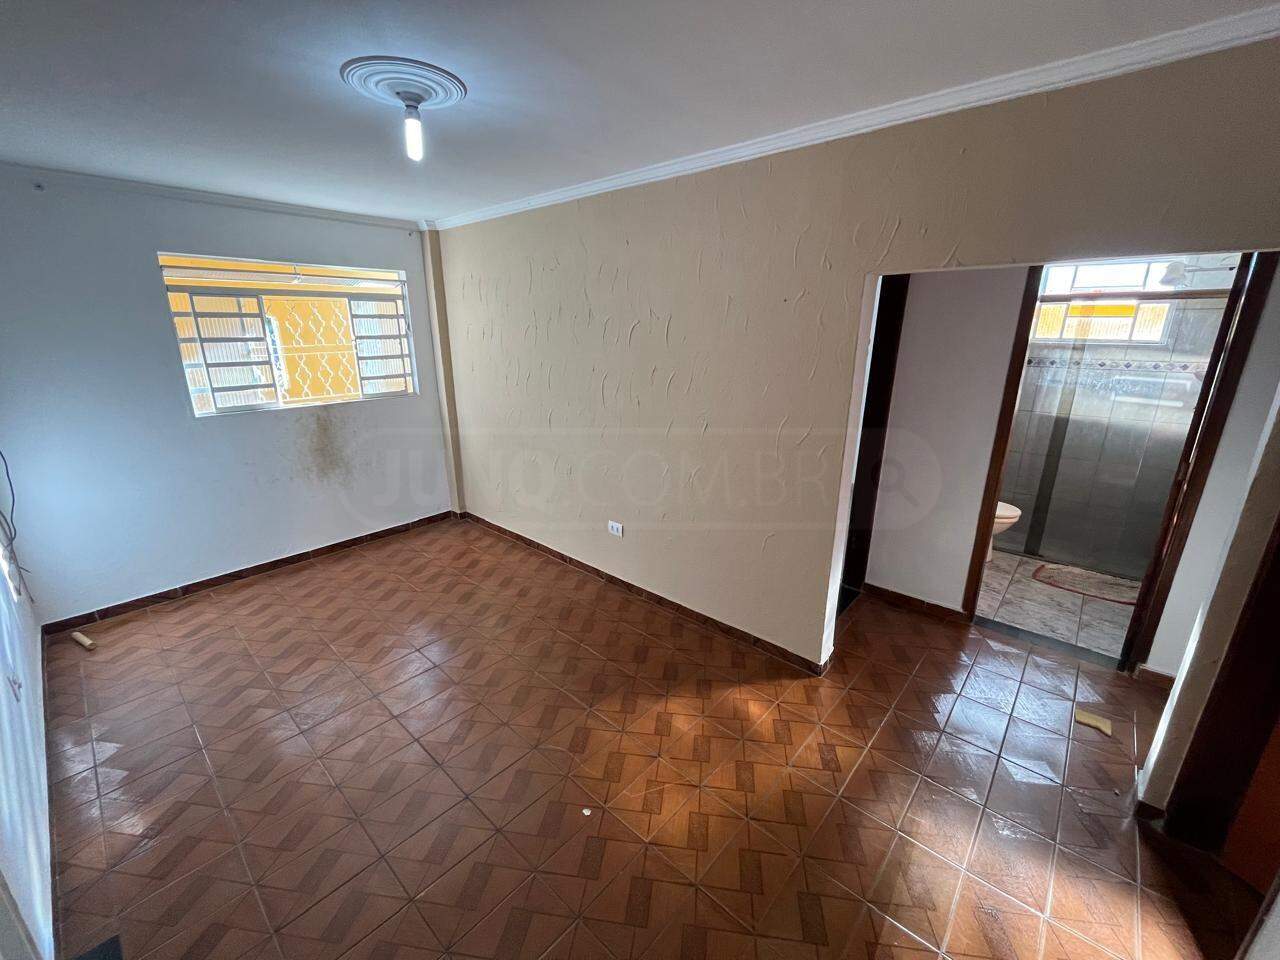 Casa para alugar, 4 quartos, 2 vagas, no bairro Santa Terezinha em Piracicaba - SP